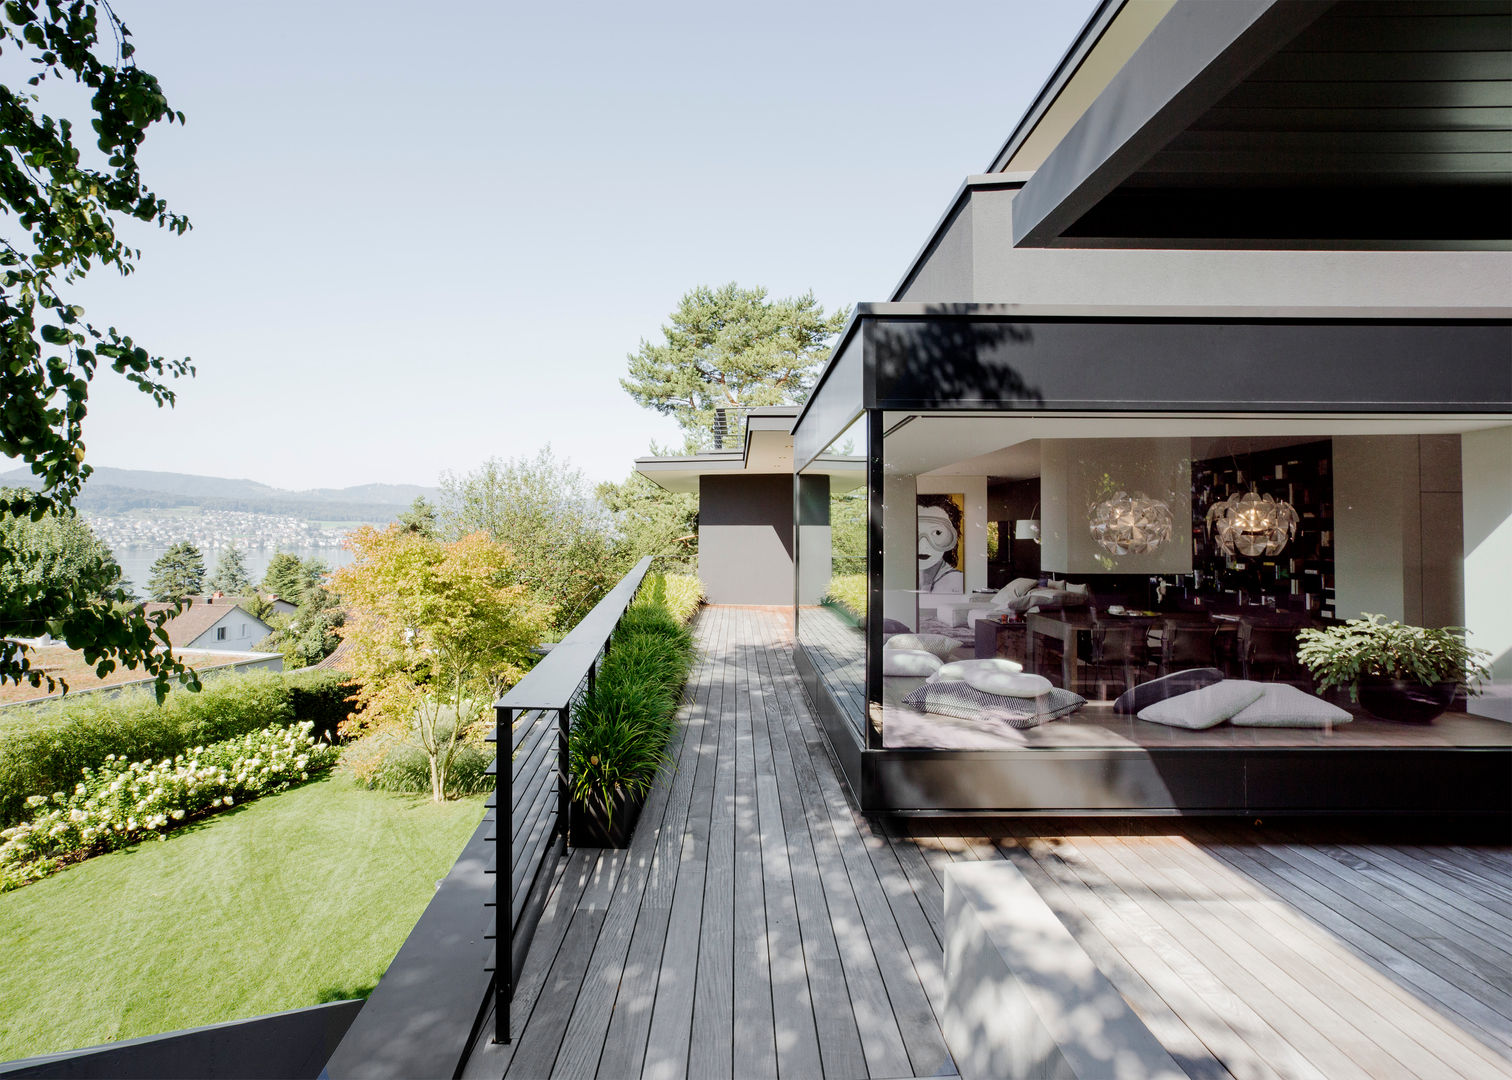 Objekt 336: Traumhaftes Einfamilienhaus mit Panoramablick , meier architekten zürich meier architekten zürich 露臺 木頭 Wood effect